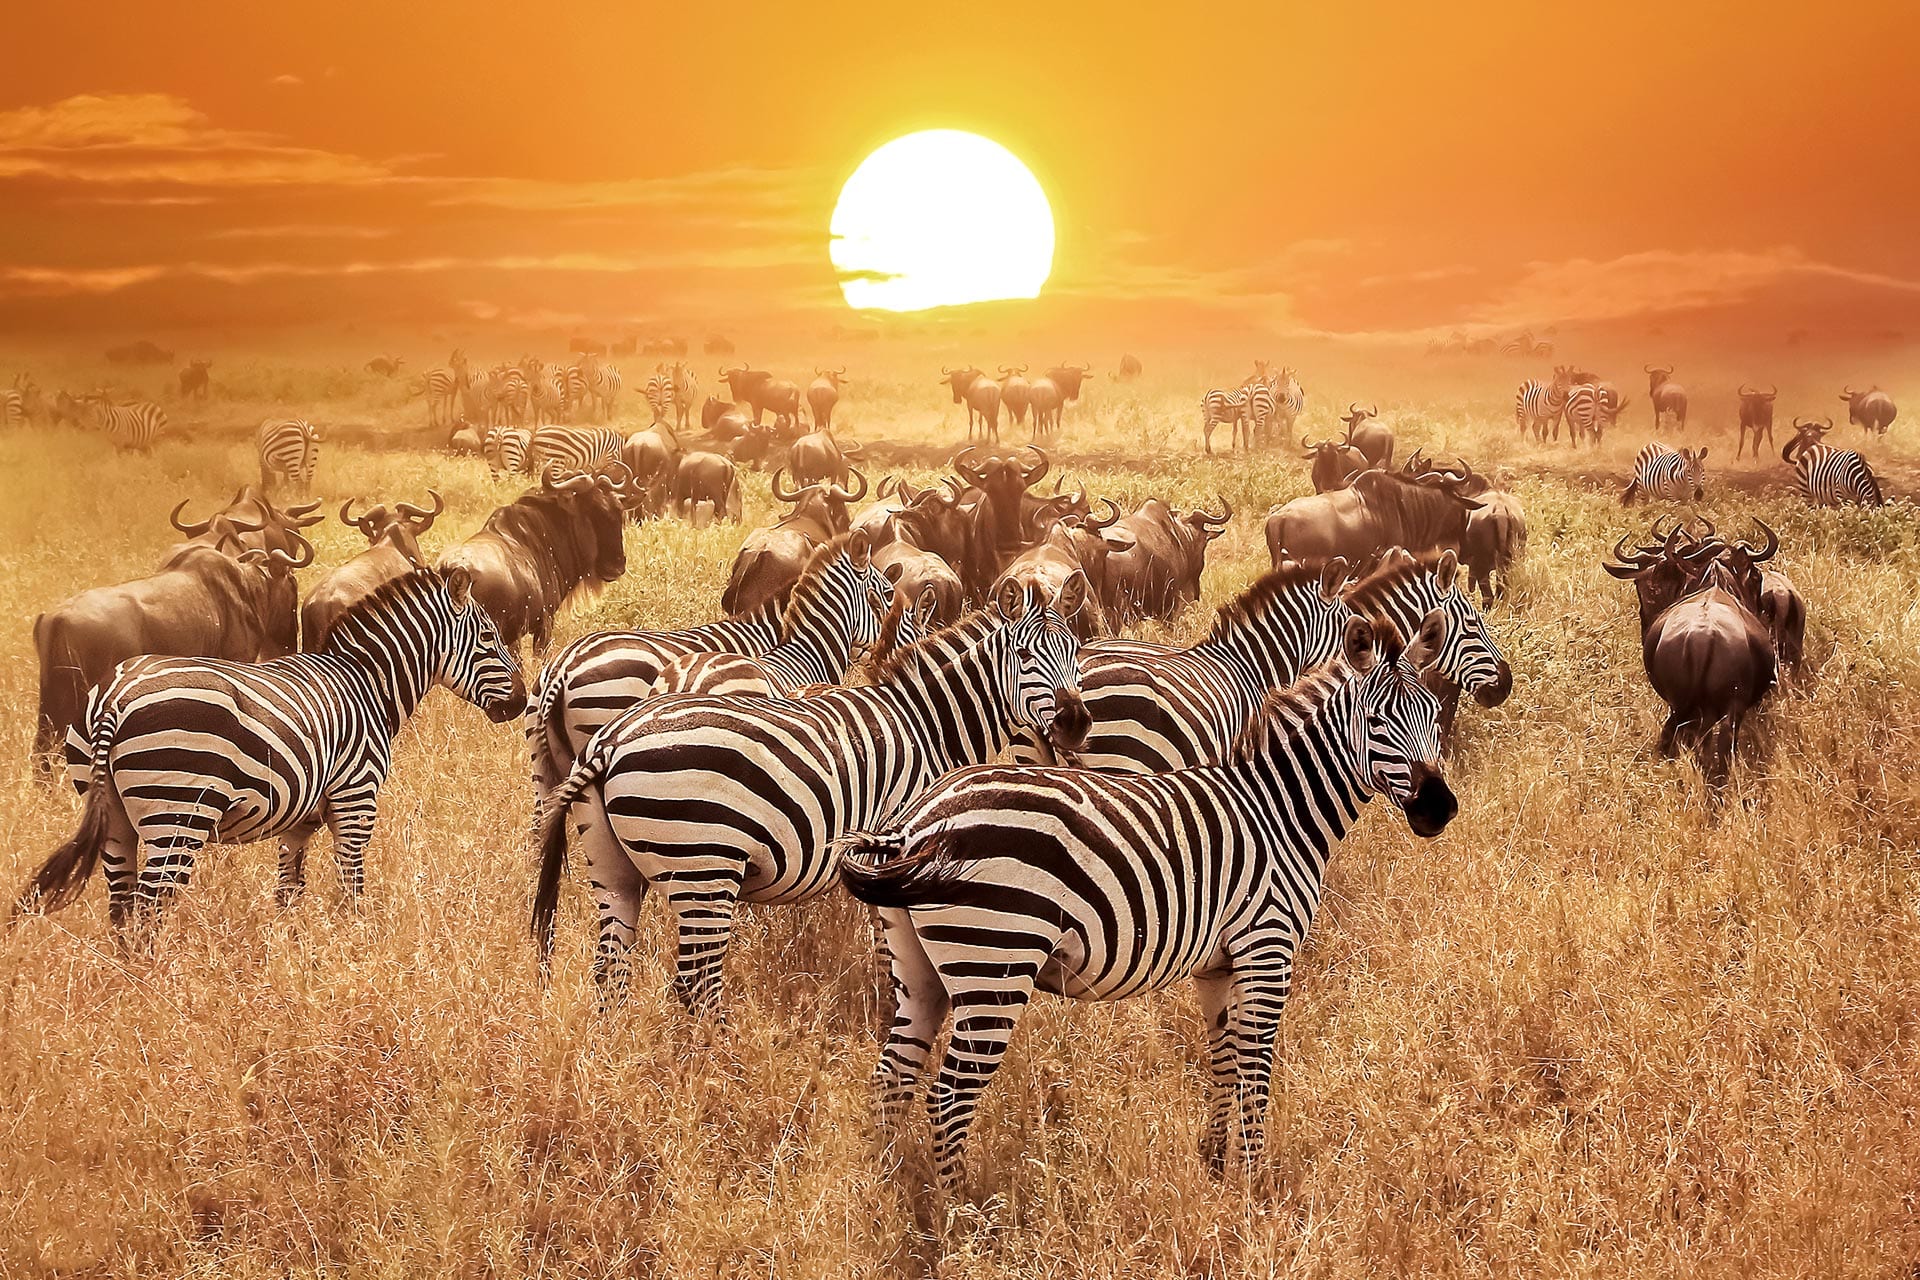 book safari kenya